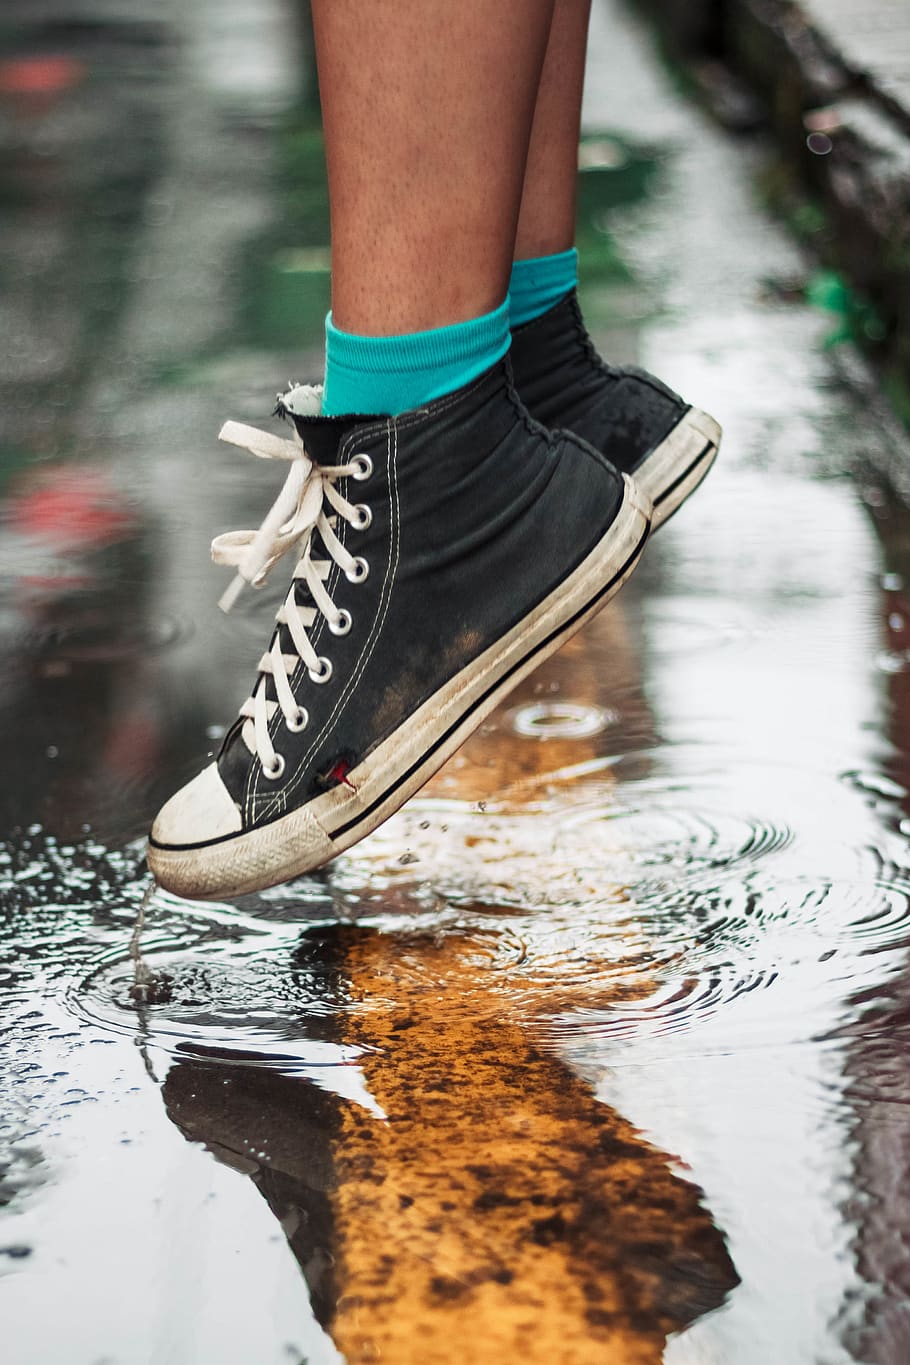 person wearing black high-top sneakers on wet floor, footwear